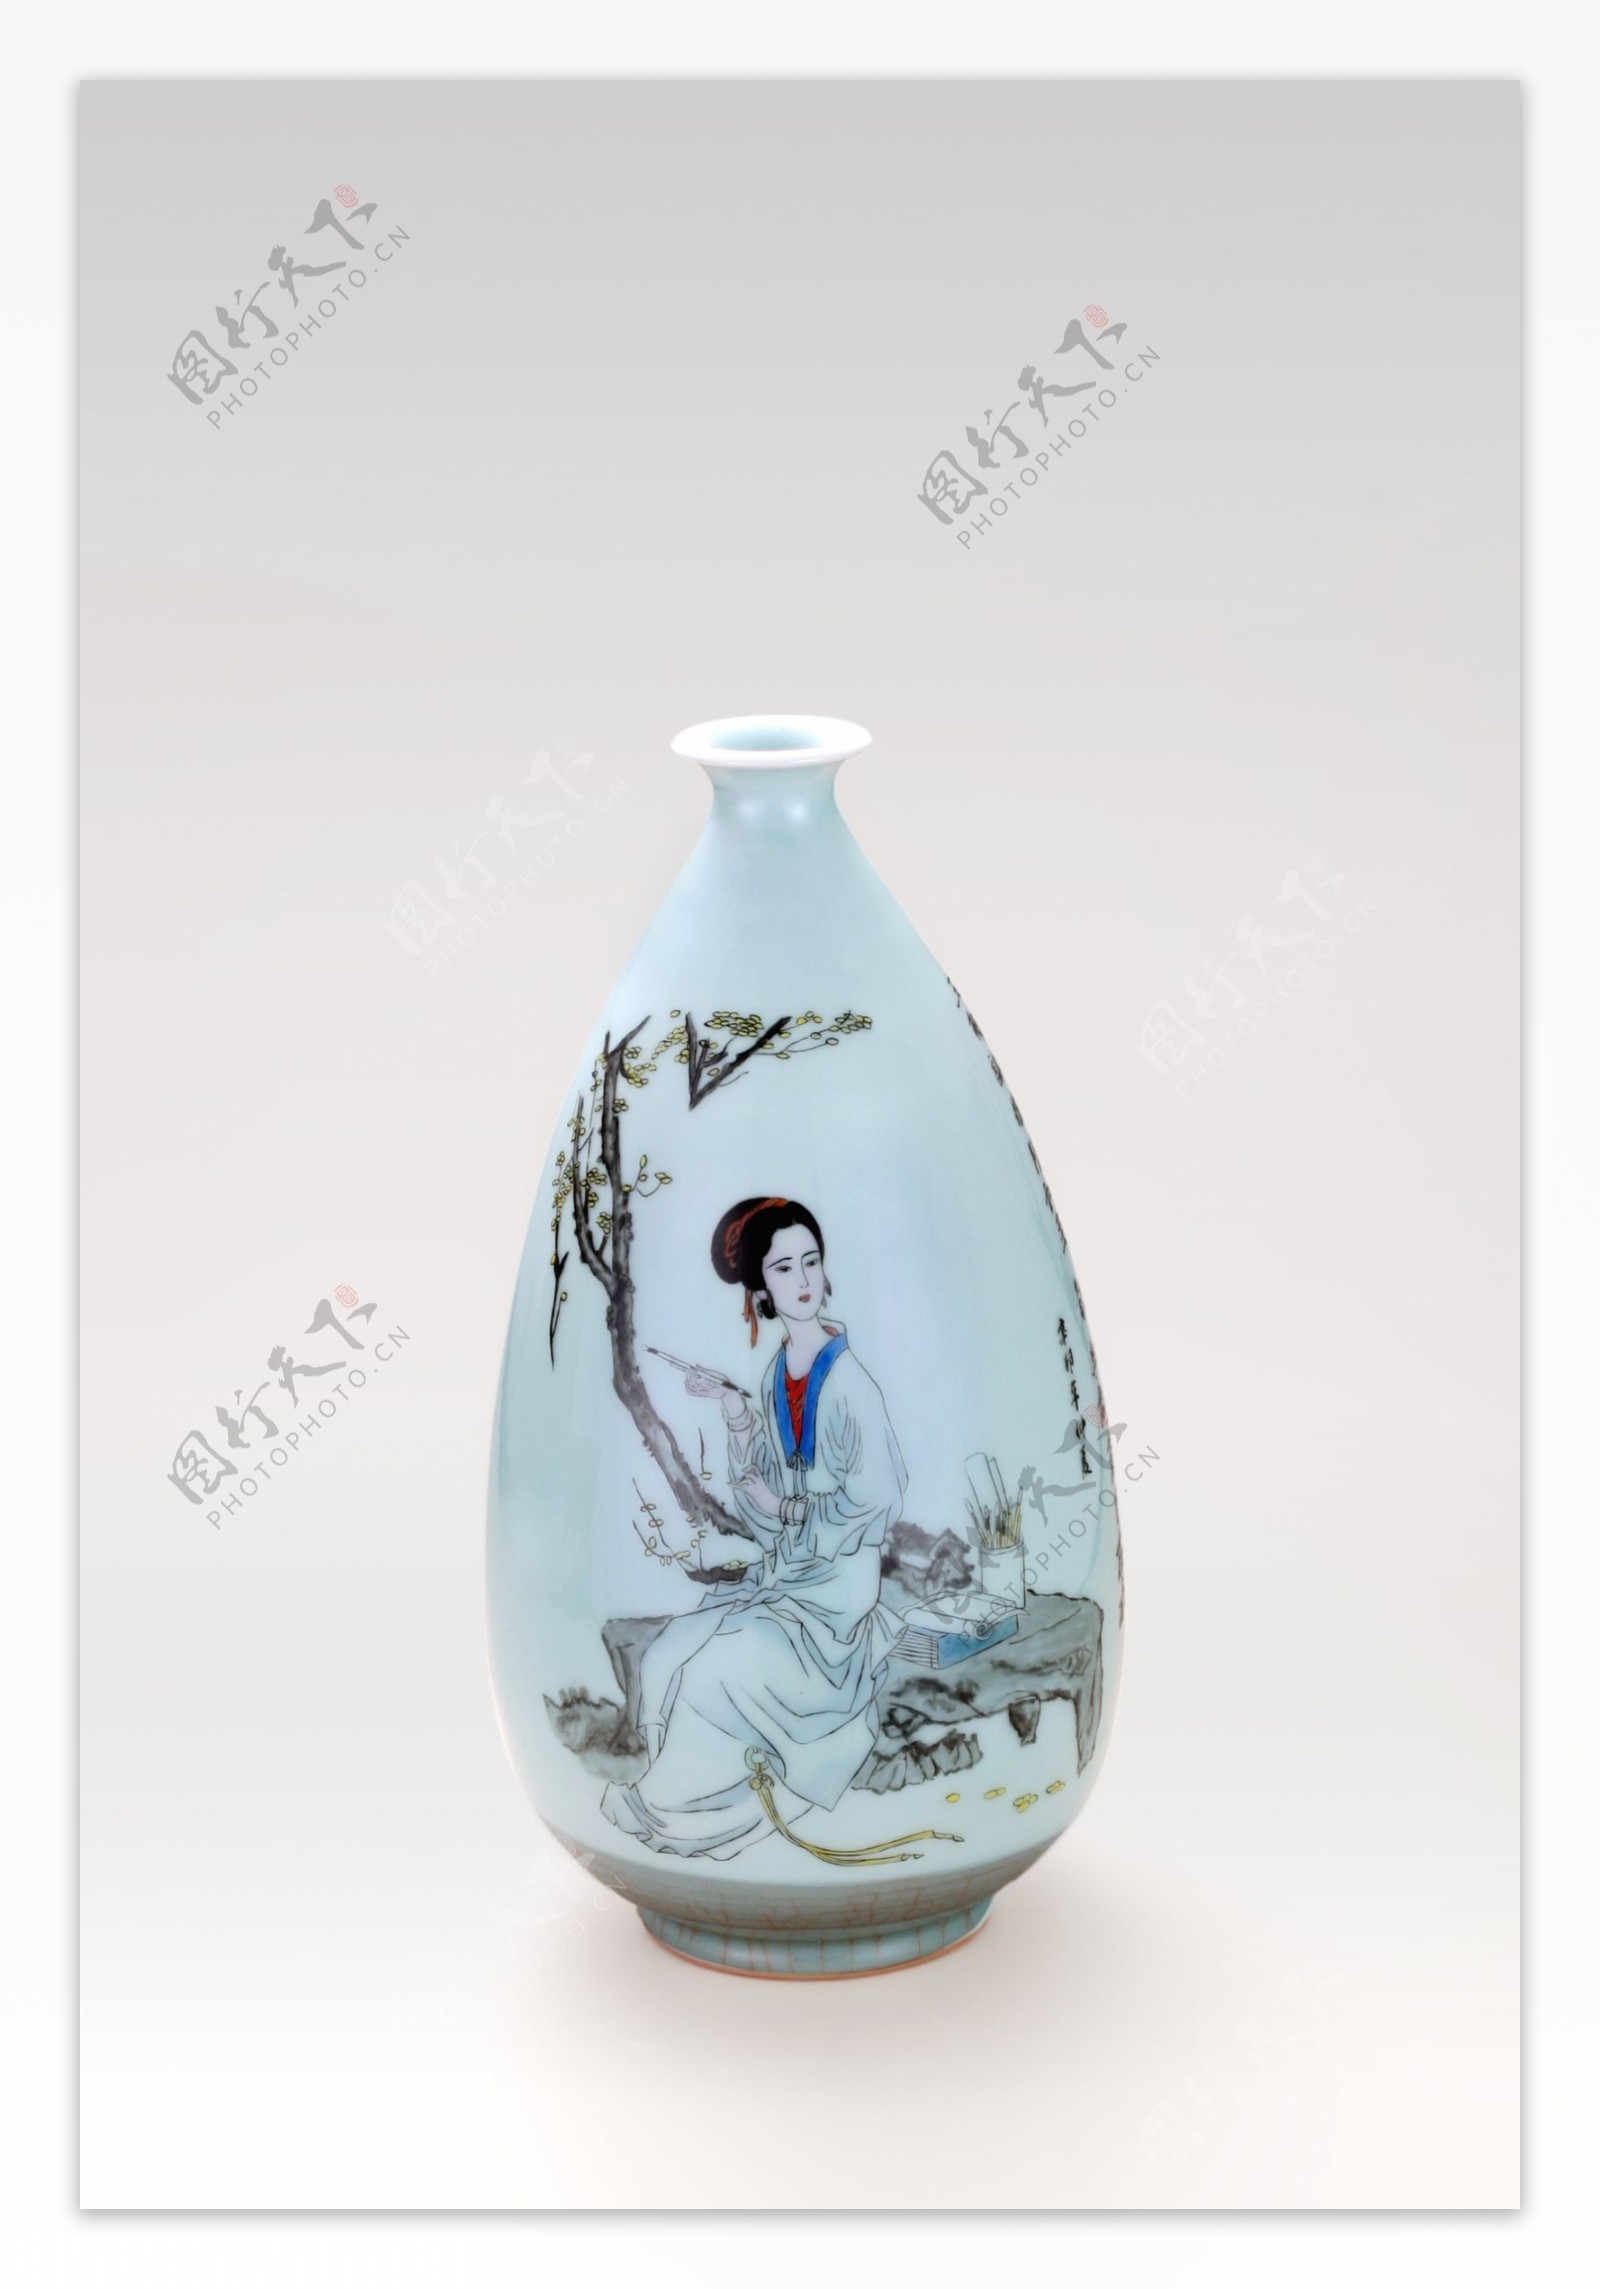 龙泉青瓷手绘瓷瓶图片